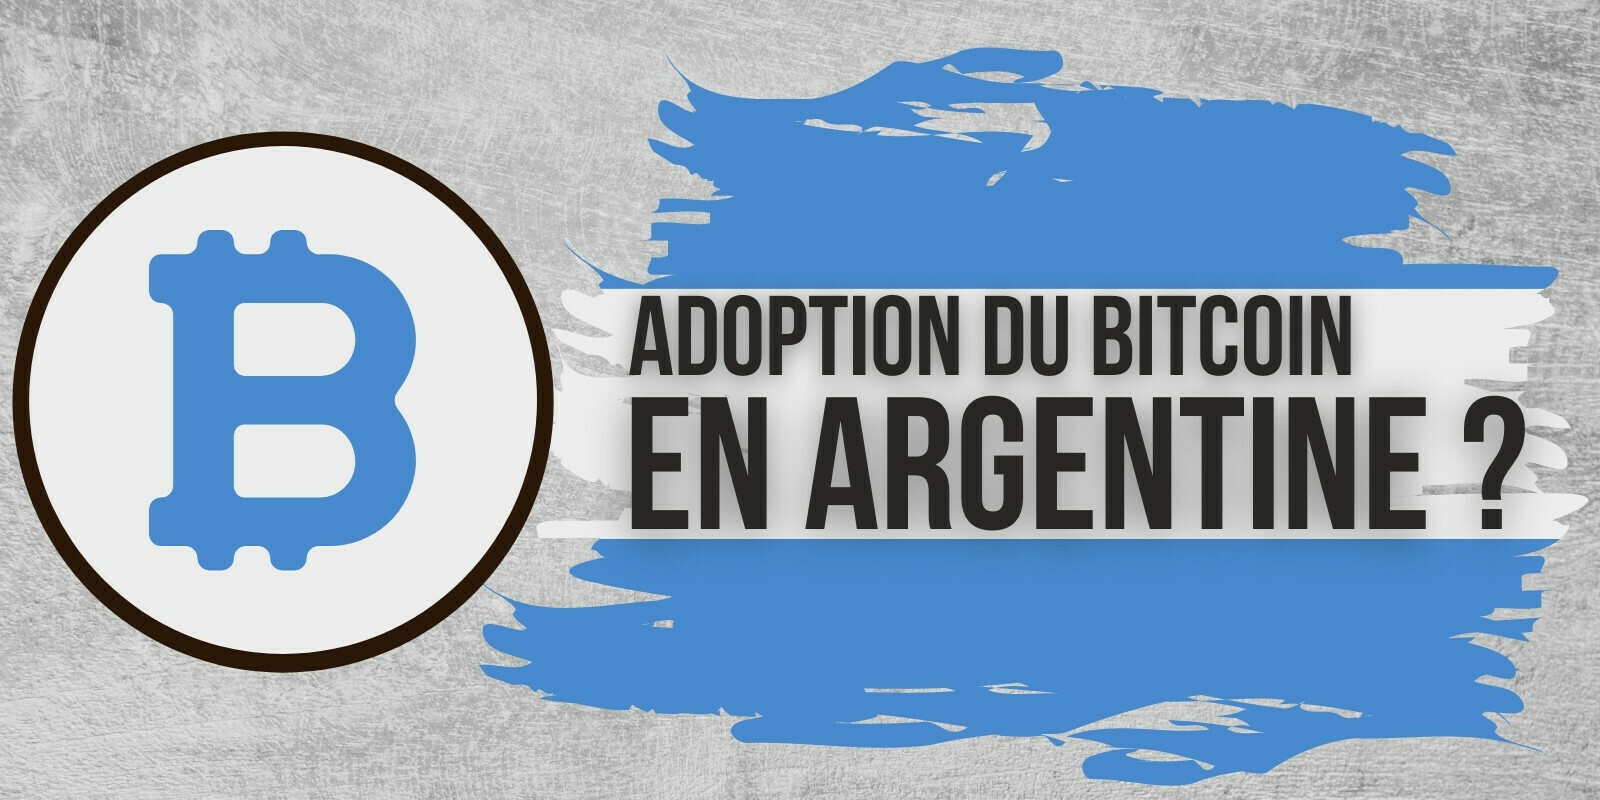 Le président d’Argentine envisage l’adoption du Bitcoin (BTC)